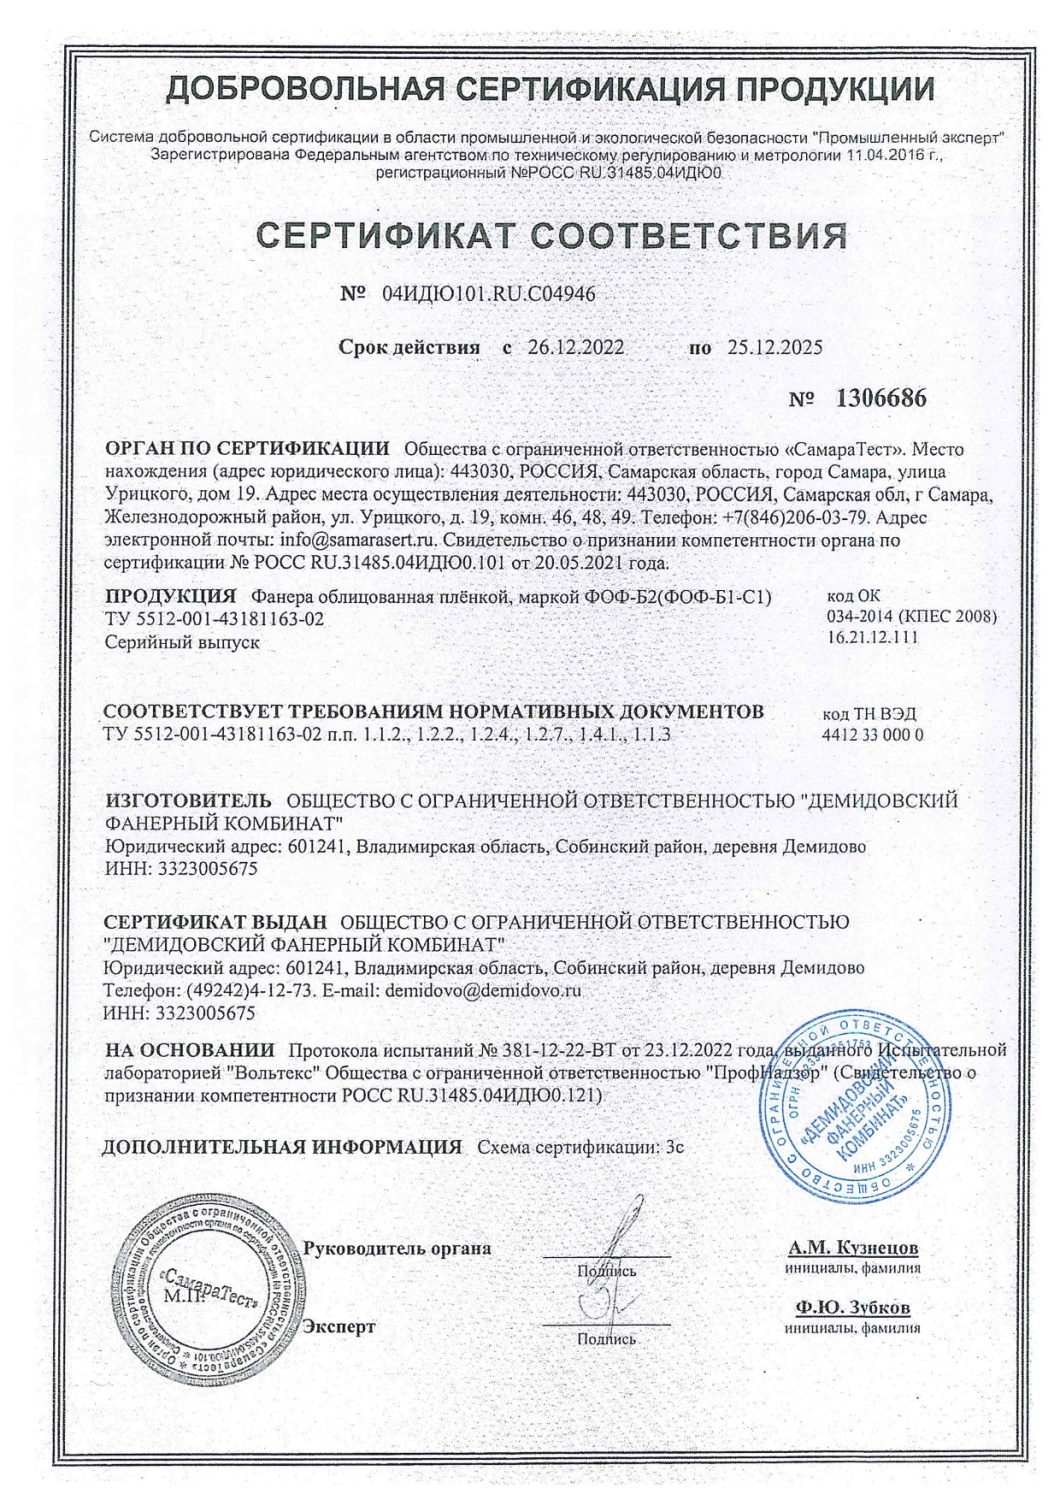 Сертификат соответствия ООО "Демидовский фанерный комбинат"